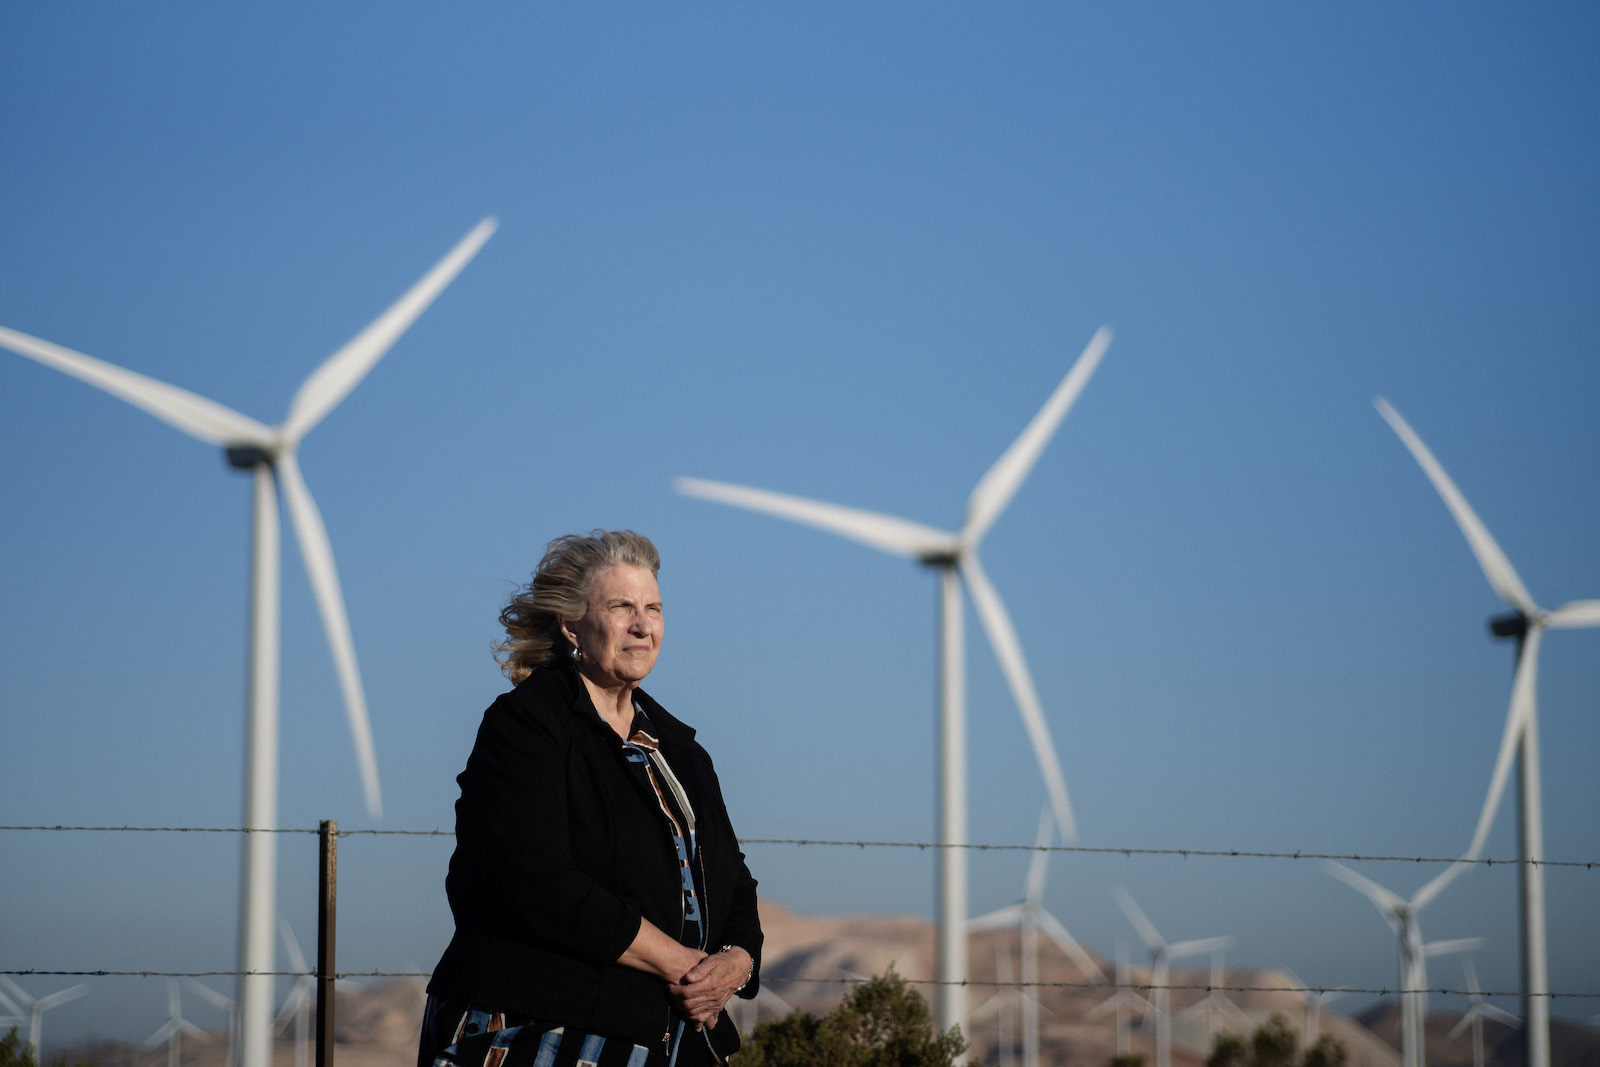 A woman stands near wind turbines